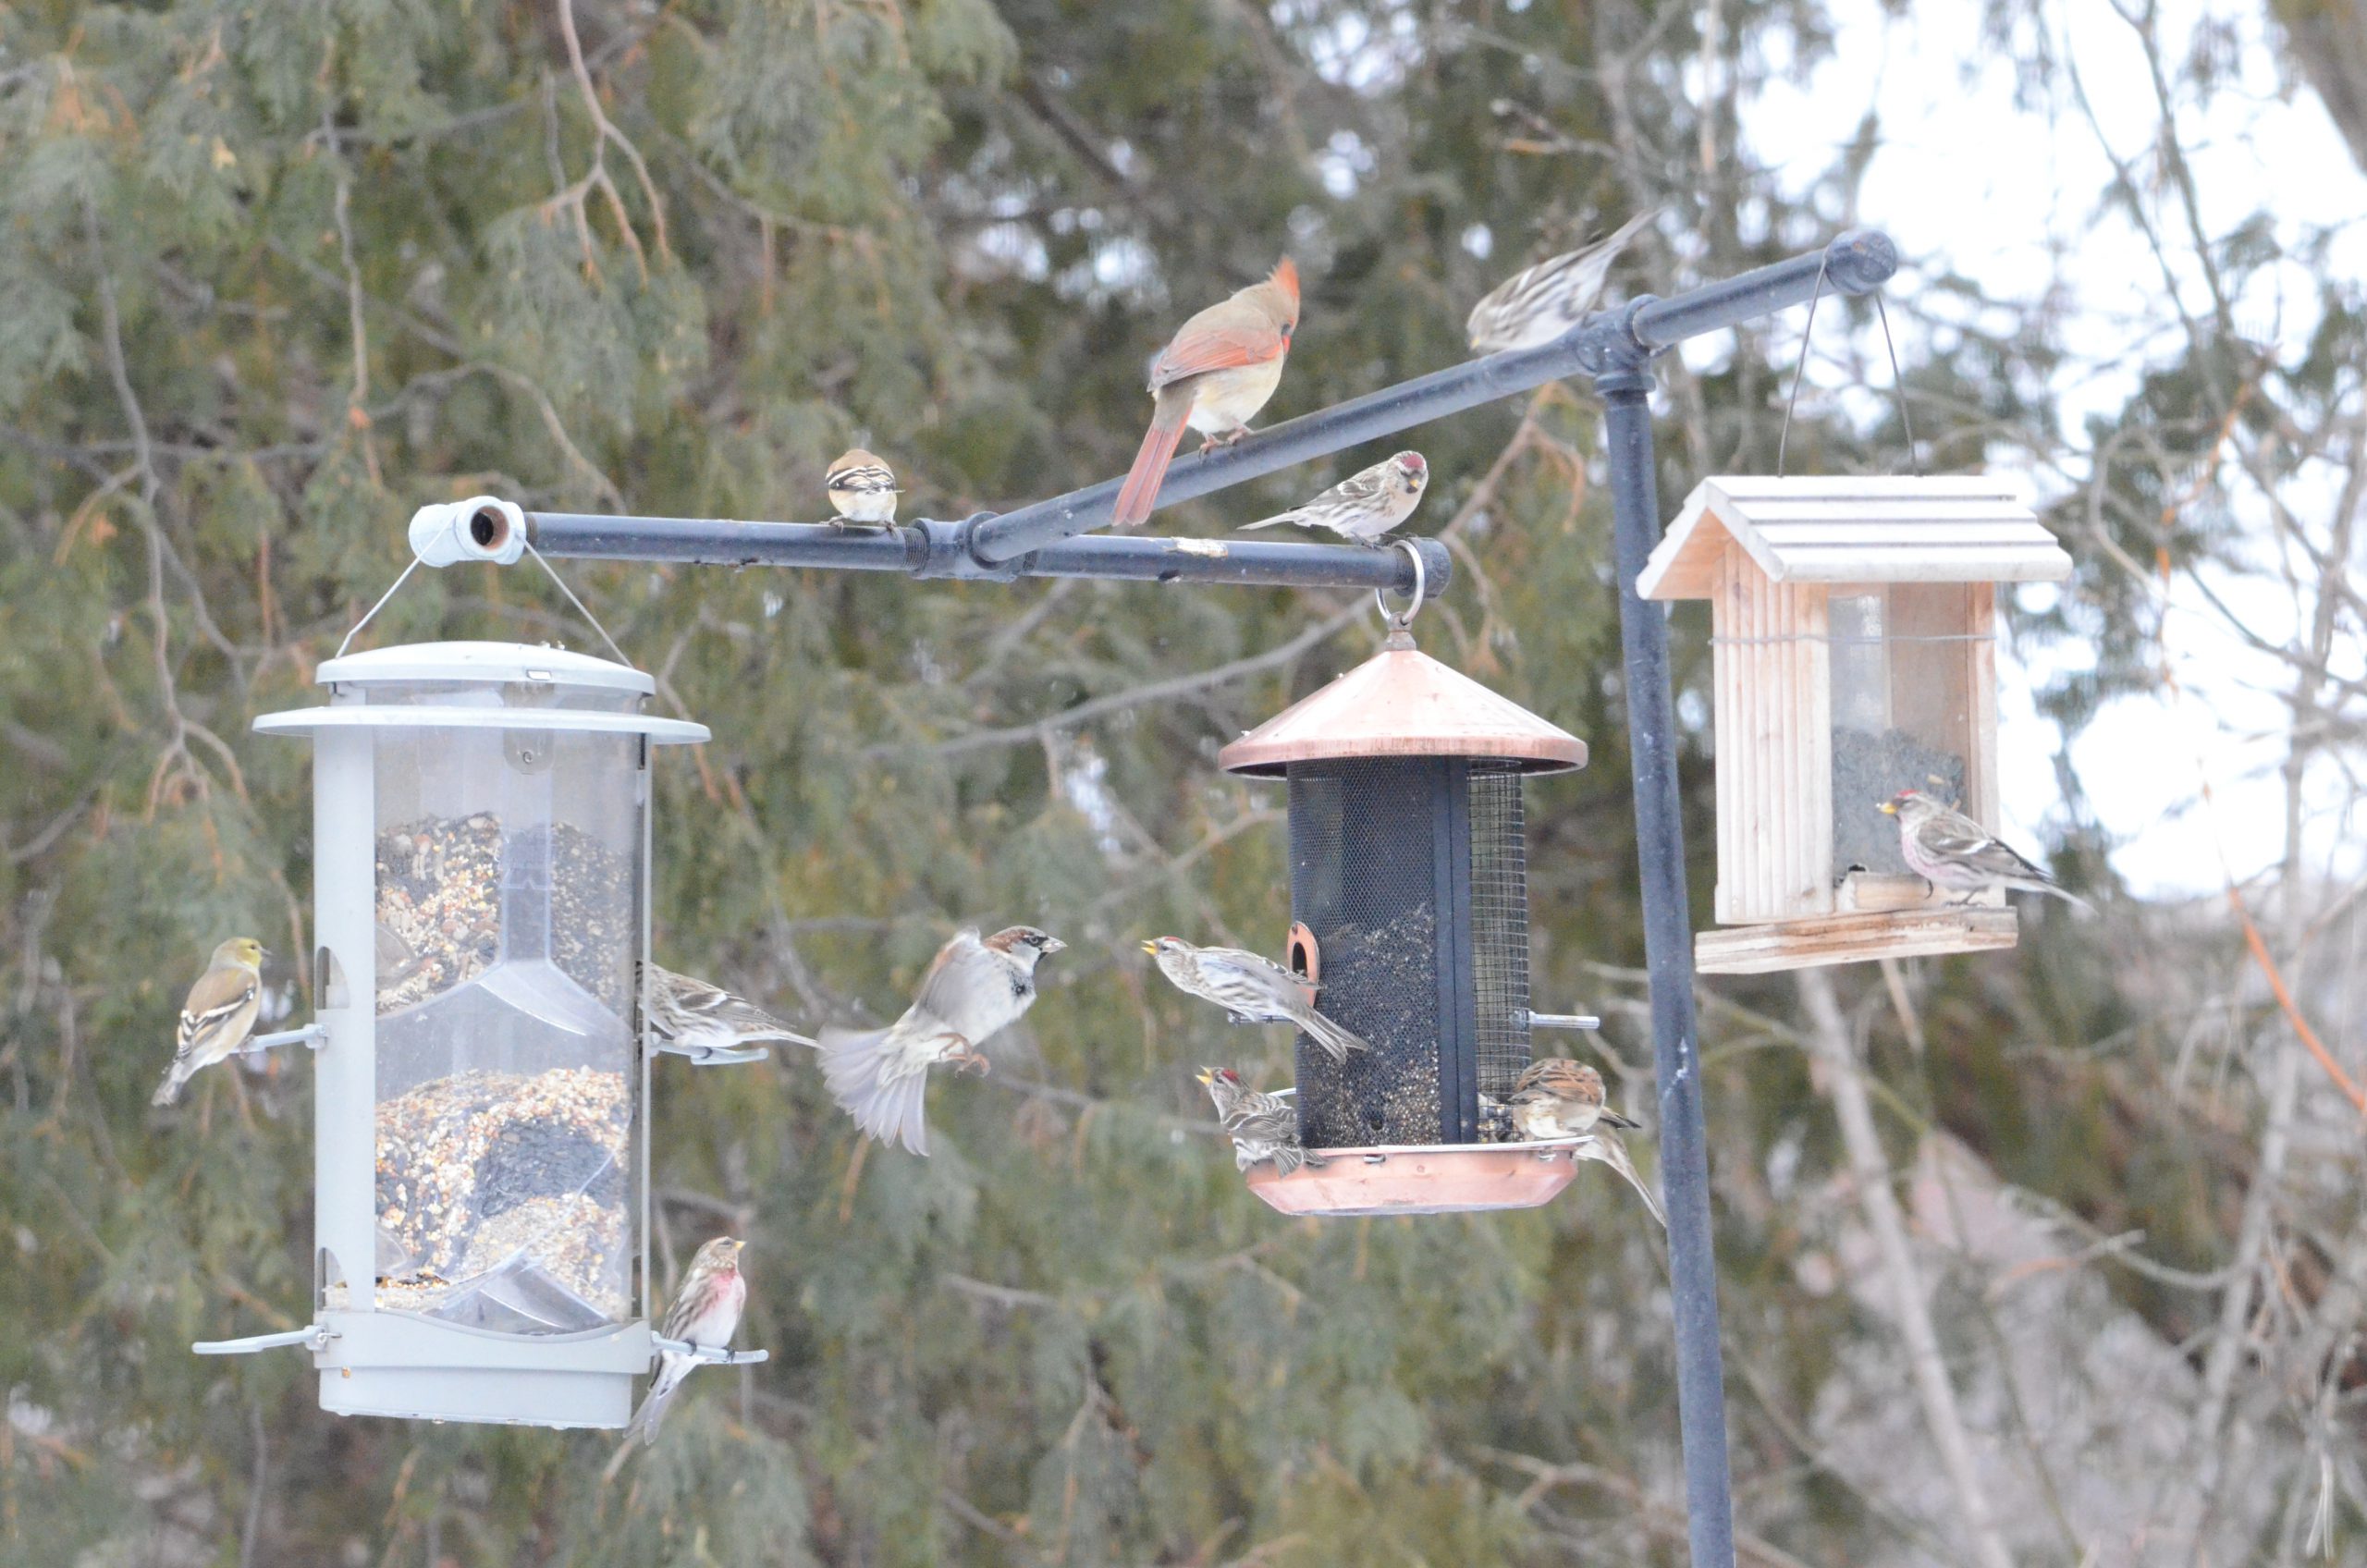 An assortment of small winter birds at a bird feeder station